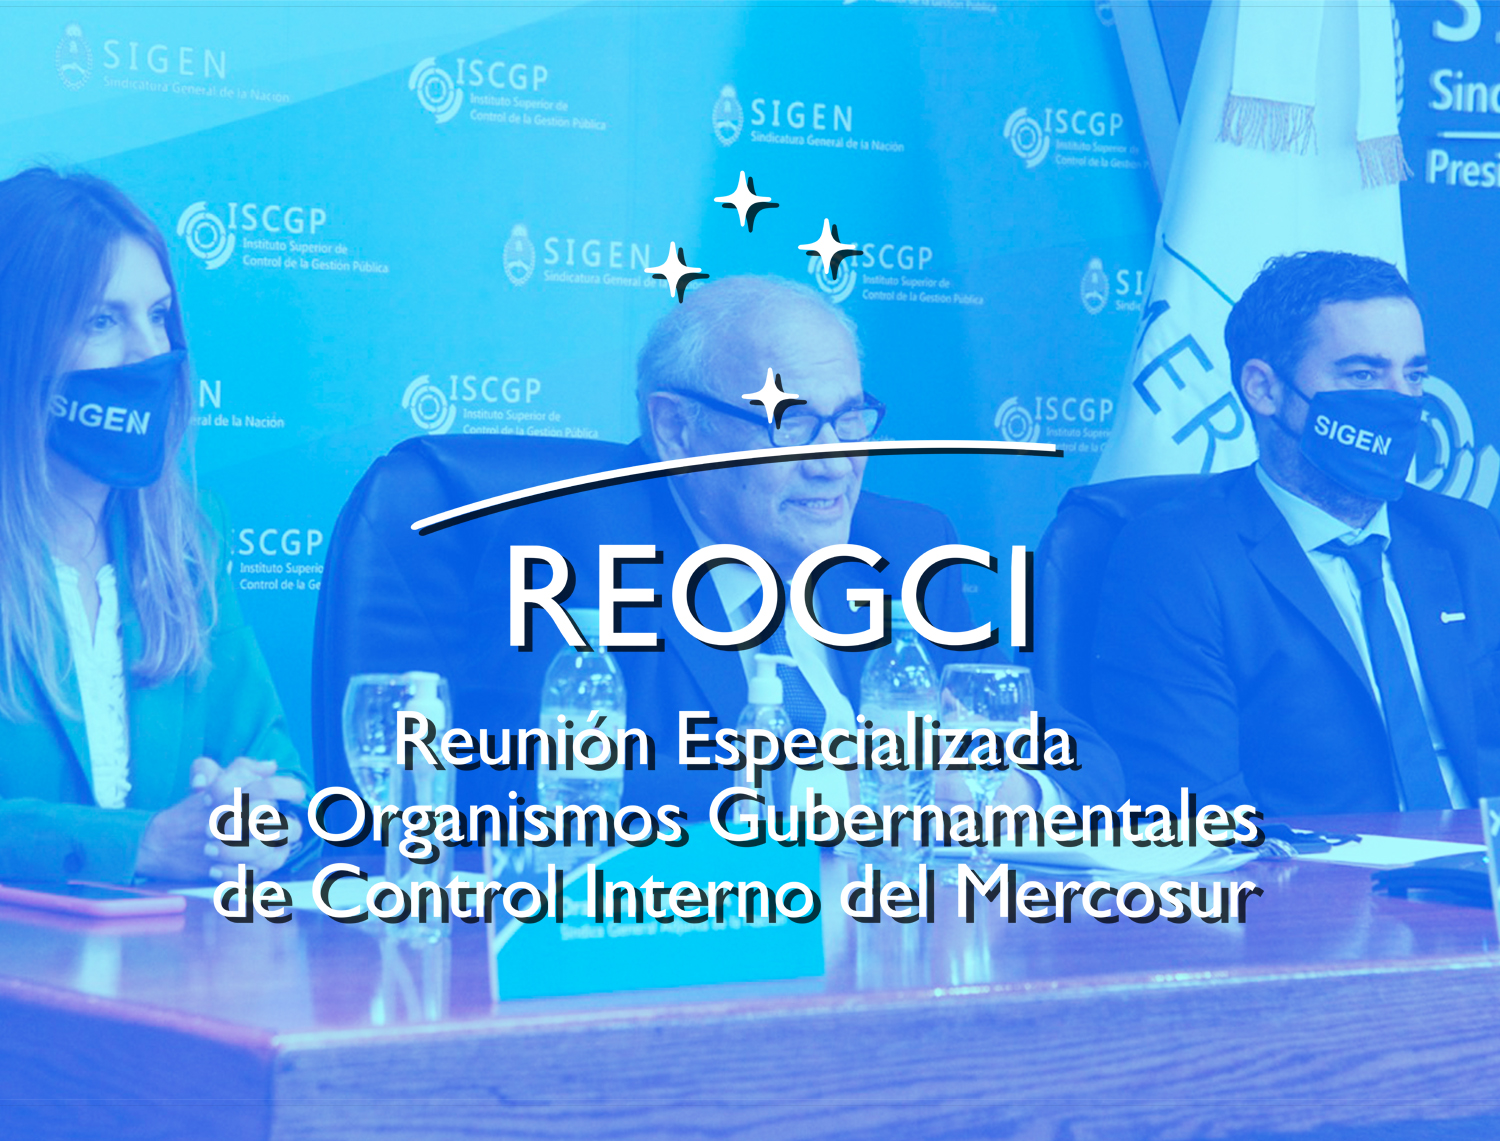  XVI Reunión Especializada de Organismos Gubernamentales de Control Interno del Mercosur - REOGCI